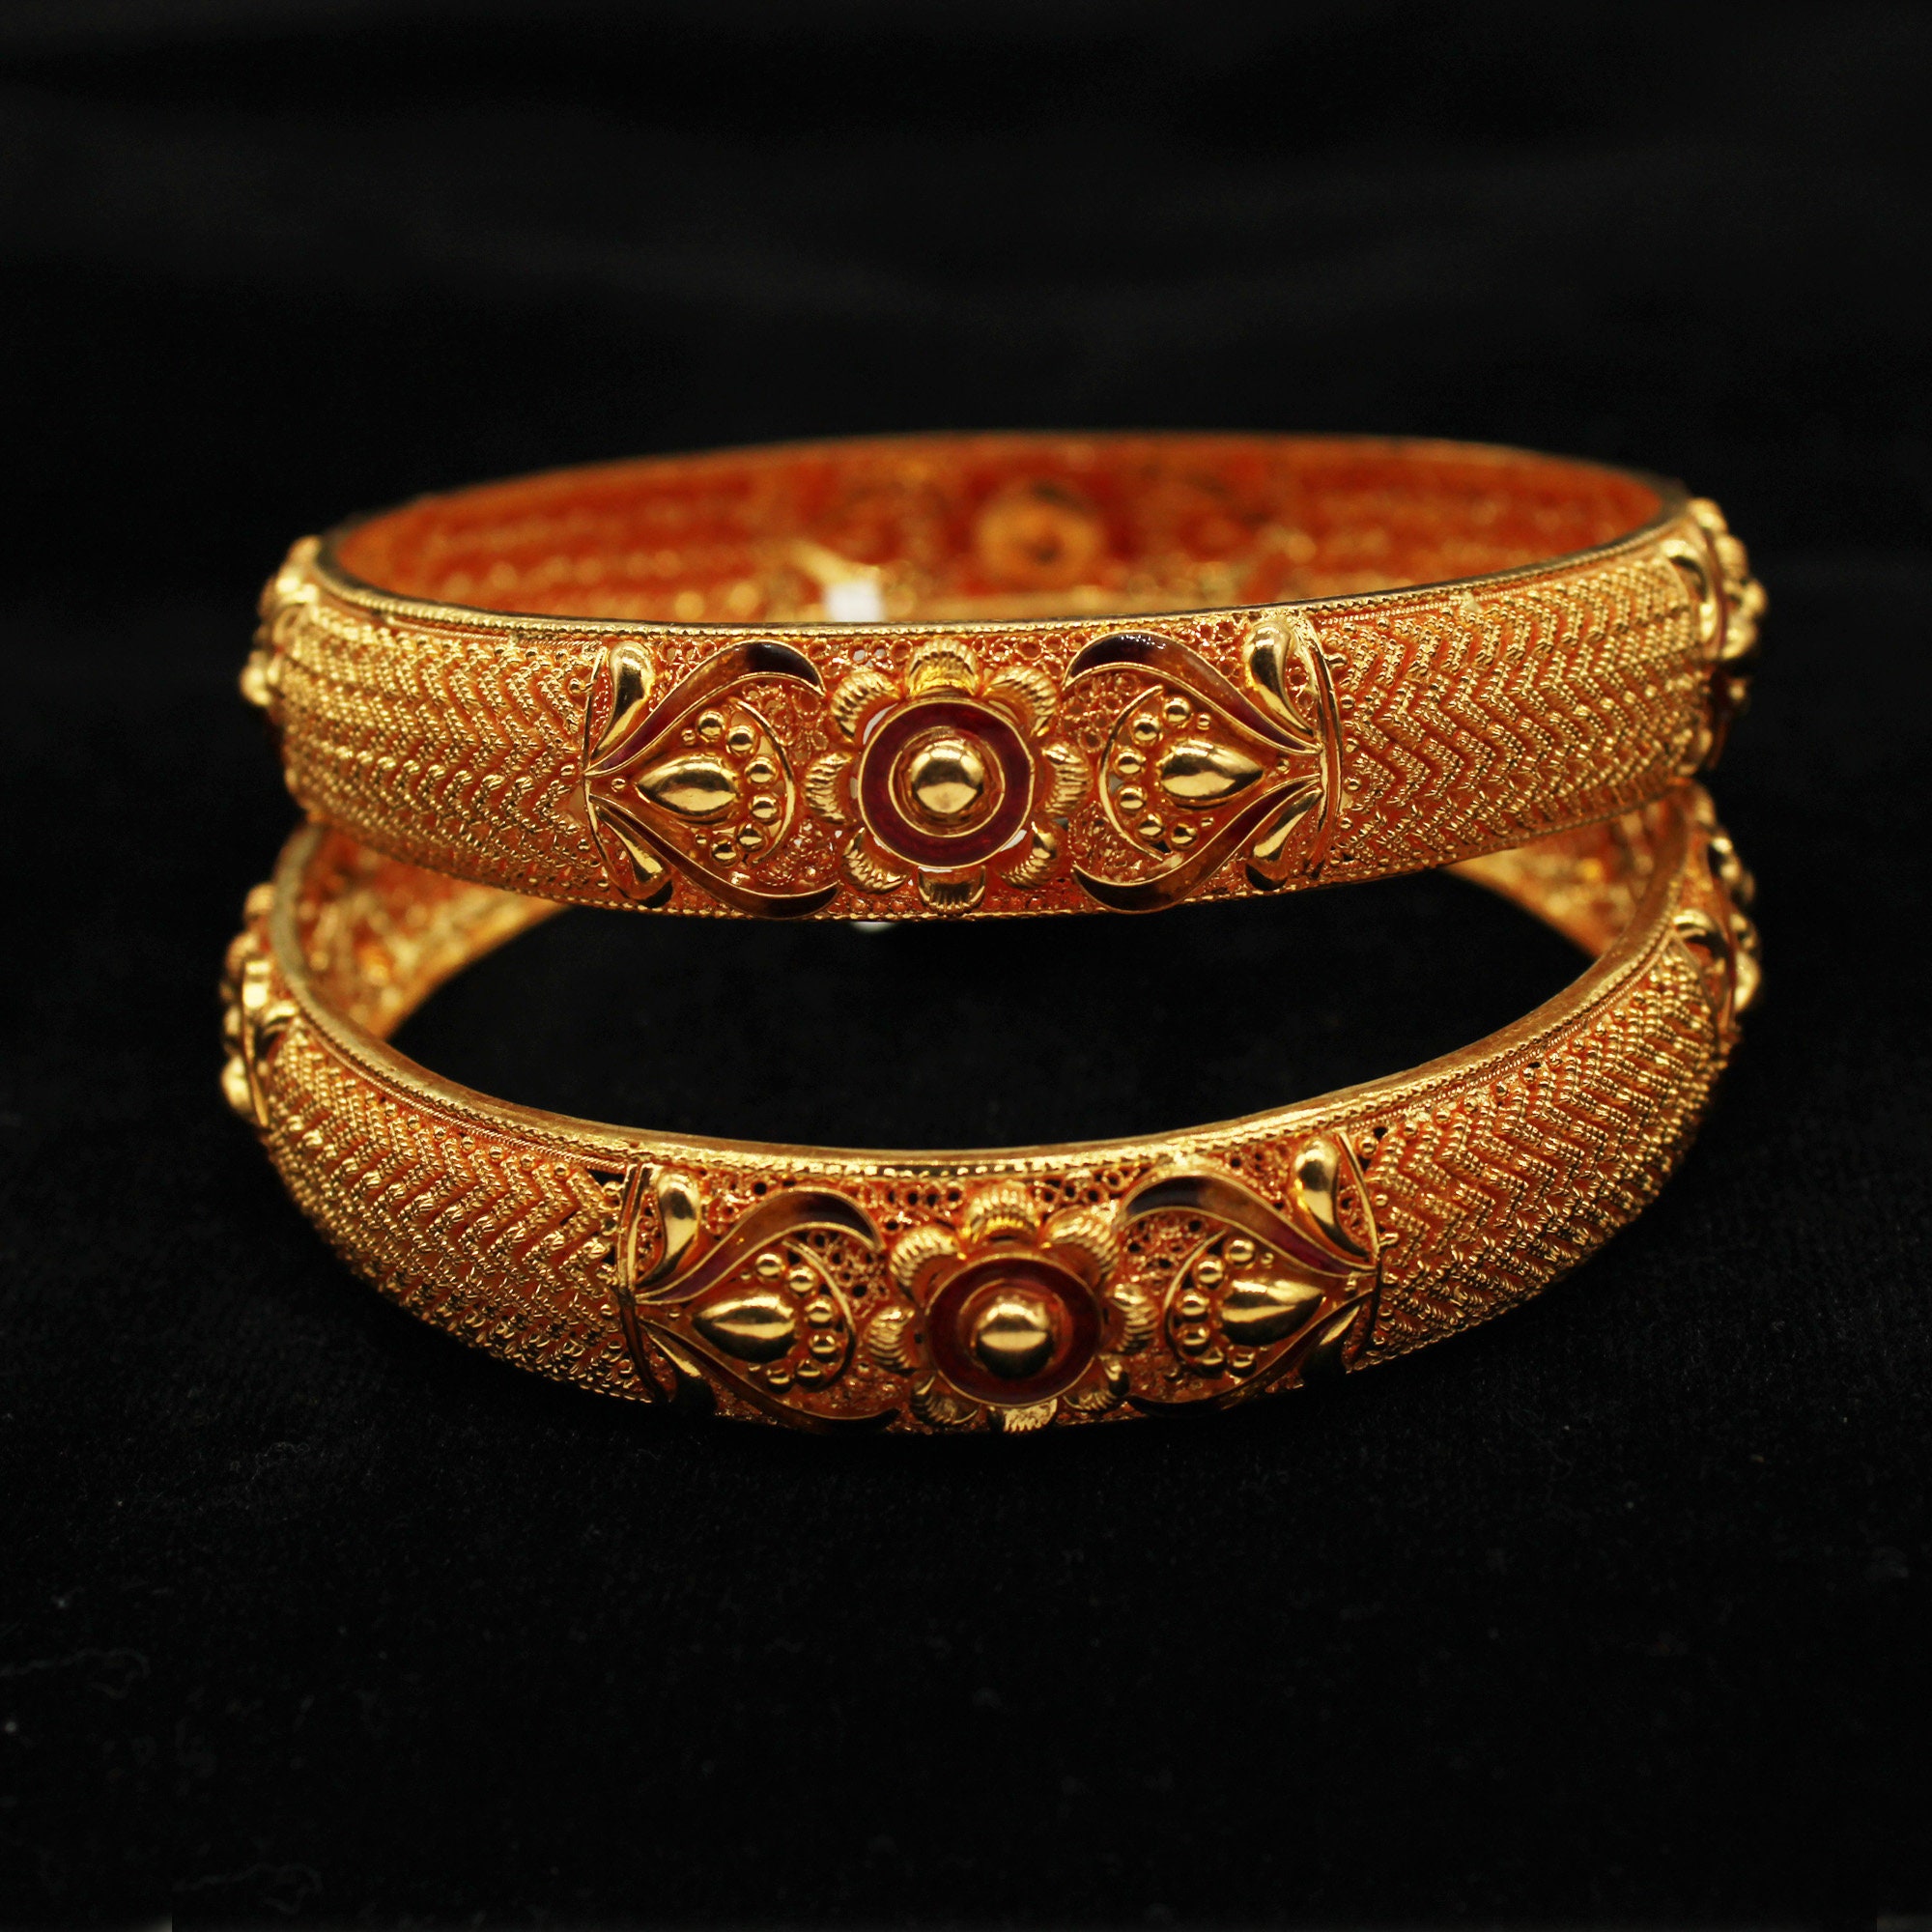 22k Gold Bangle Bracelet Pair, Indian Gold Bangle Jewelry, Wedding 